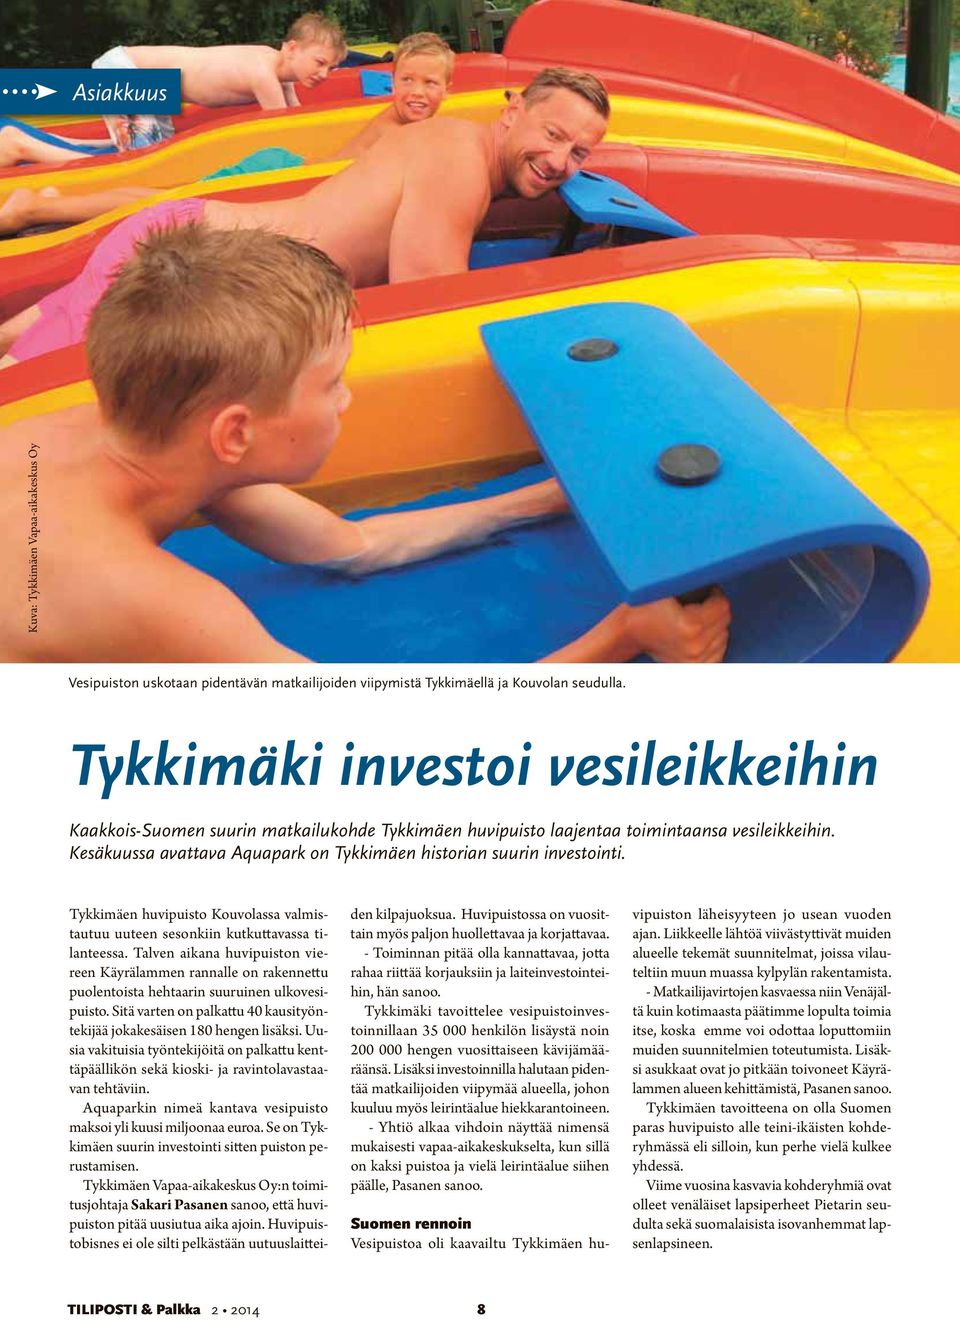 Kesäkuussa avattava Aquapark on Tykkimäen historian suurin investointi. Tykkimäen huvipuisto Kouvolassa valmistautuu uuteen sesonkiin kutkuttavassa tilanteessa.